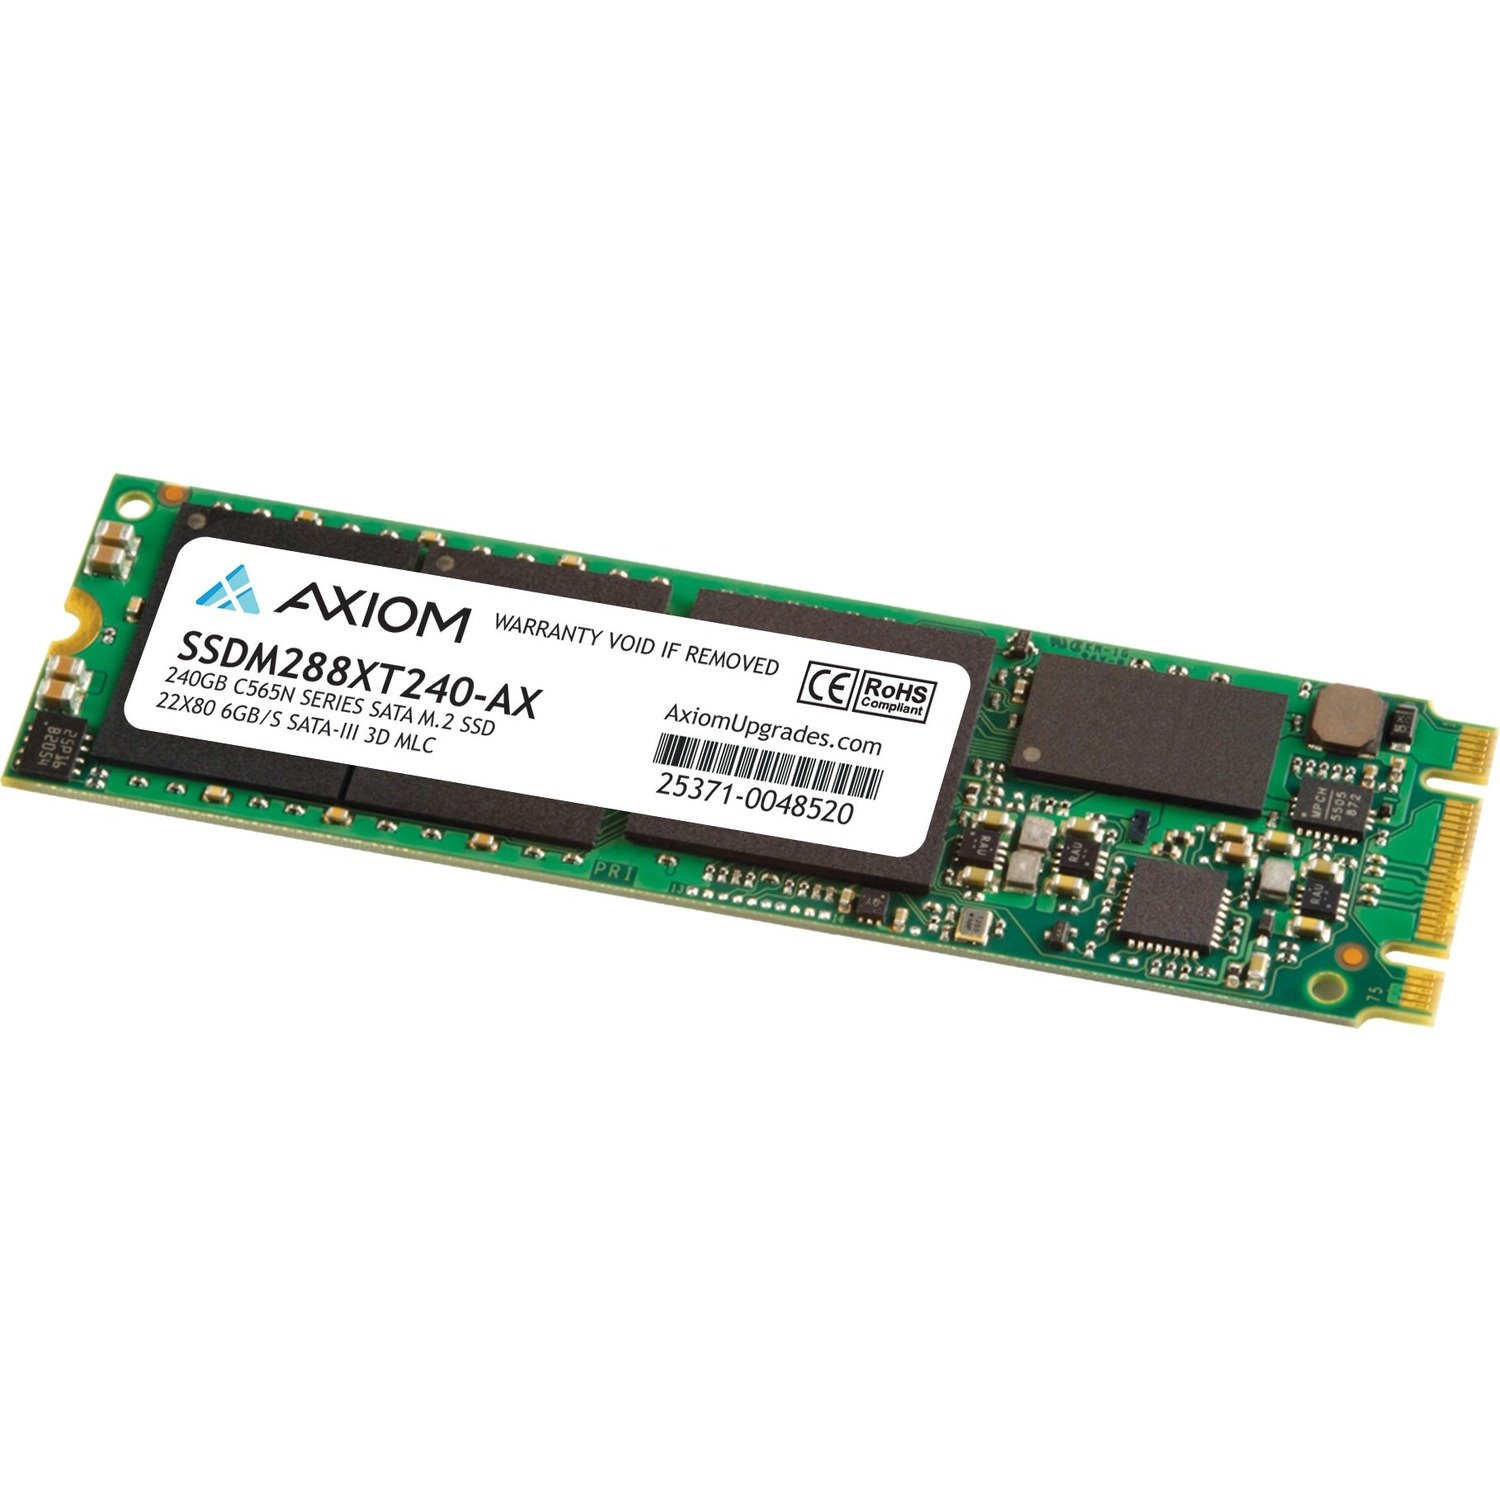 Axiom 240GB C565n Series SATA M.2 22x80 SSD 6Gb/s SATA-III